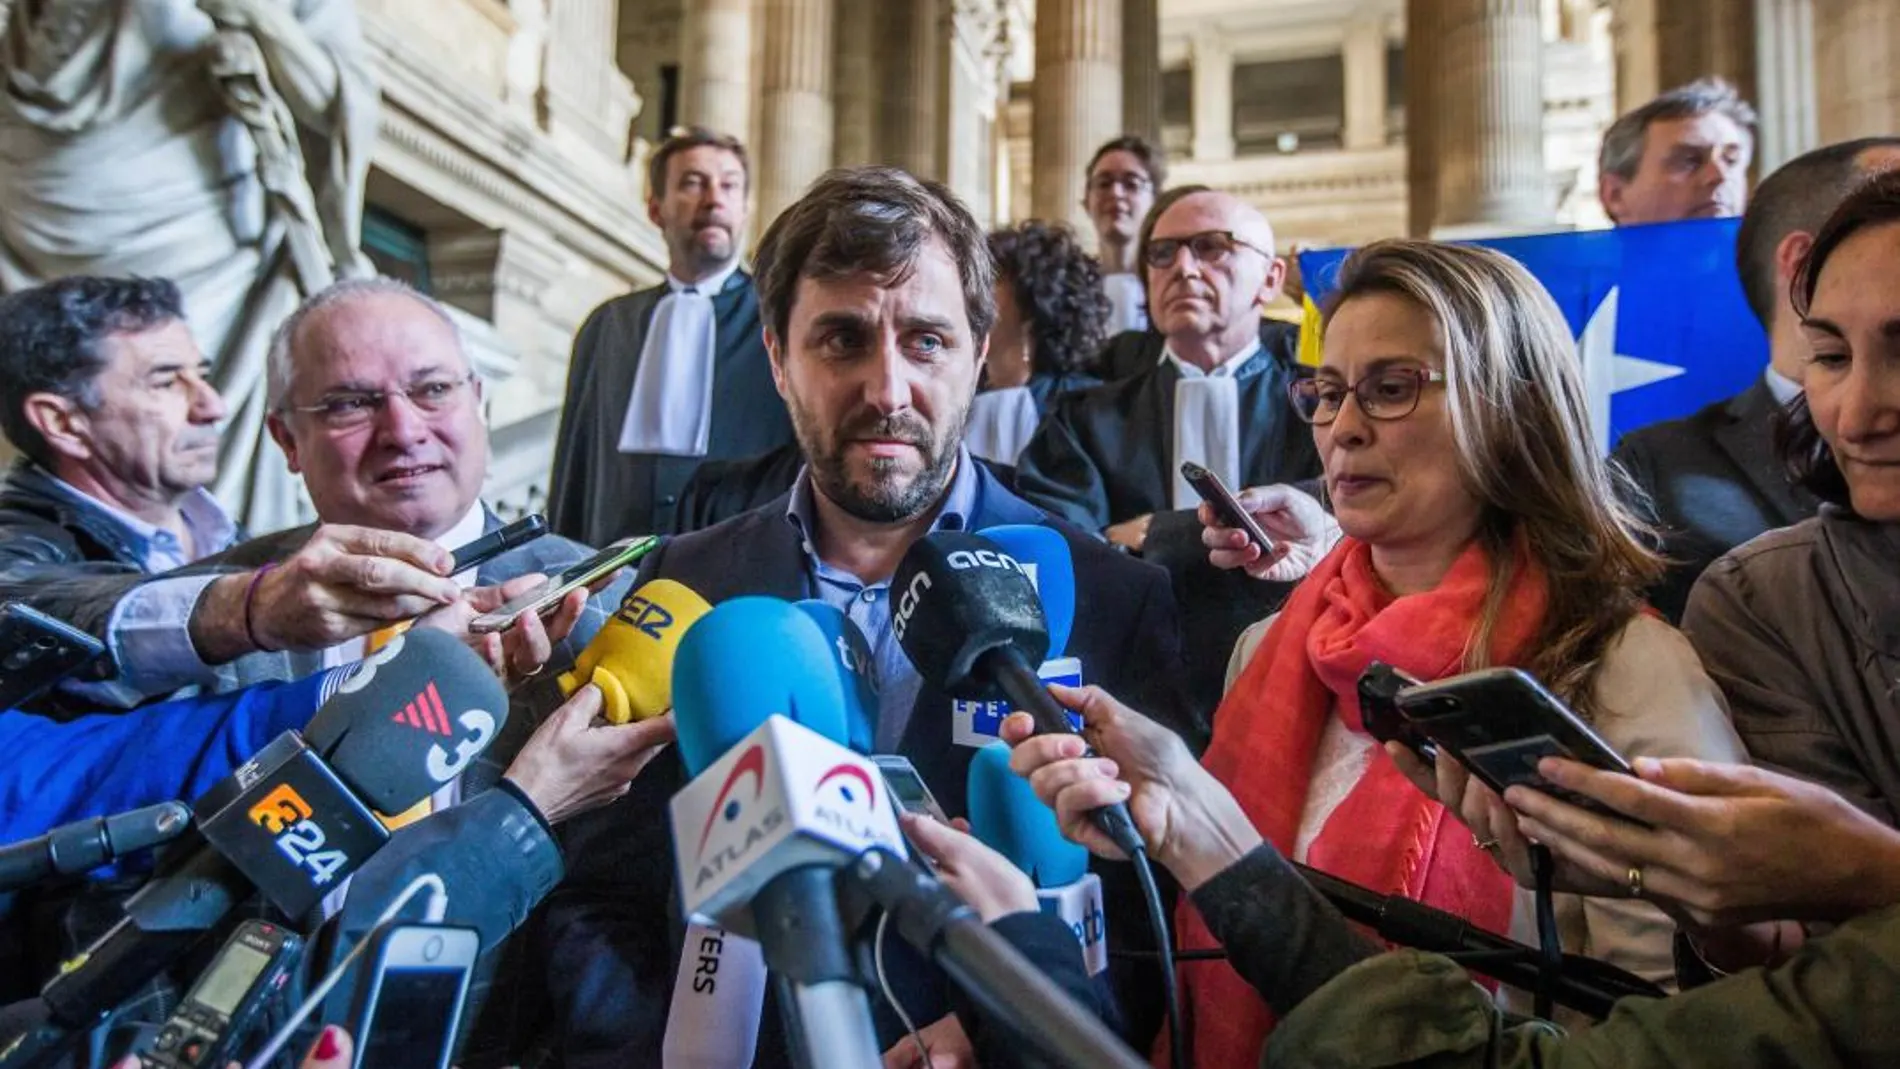 Los exconsejeros catalanes huidos Lluís Puig (2º izq), Toni Comín (c) y Meritxell Serret (2ª dcha) atienden a la prensa tras comparecer ante el juez belga. EFE/ Stephanie Lecocq